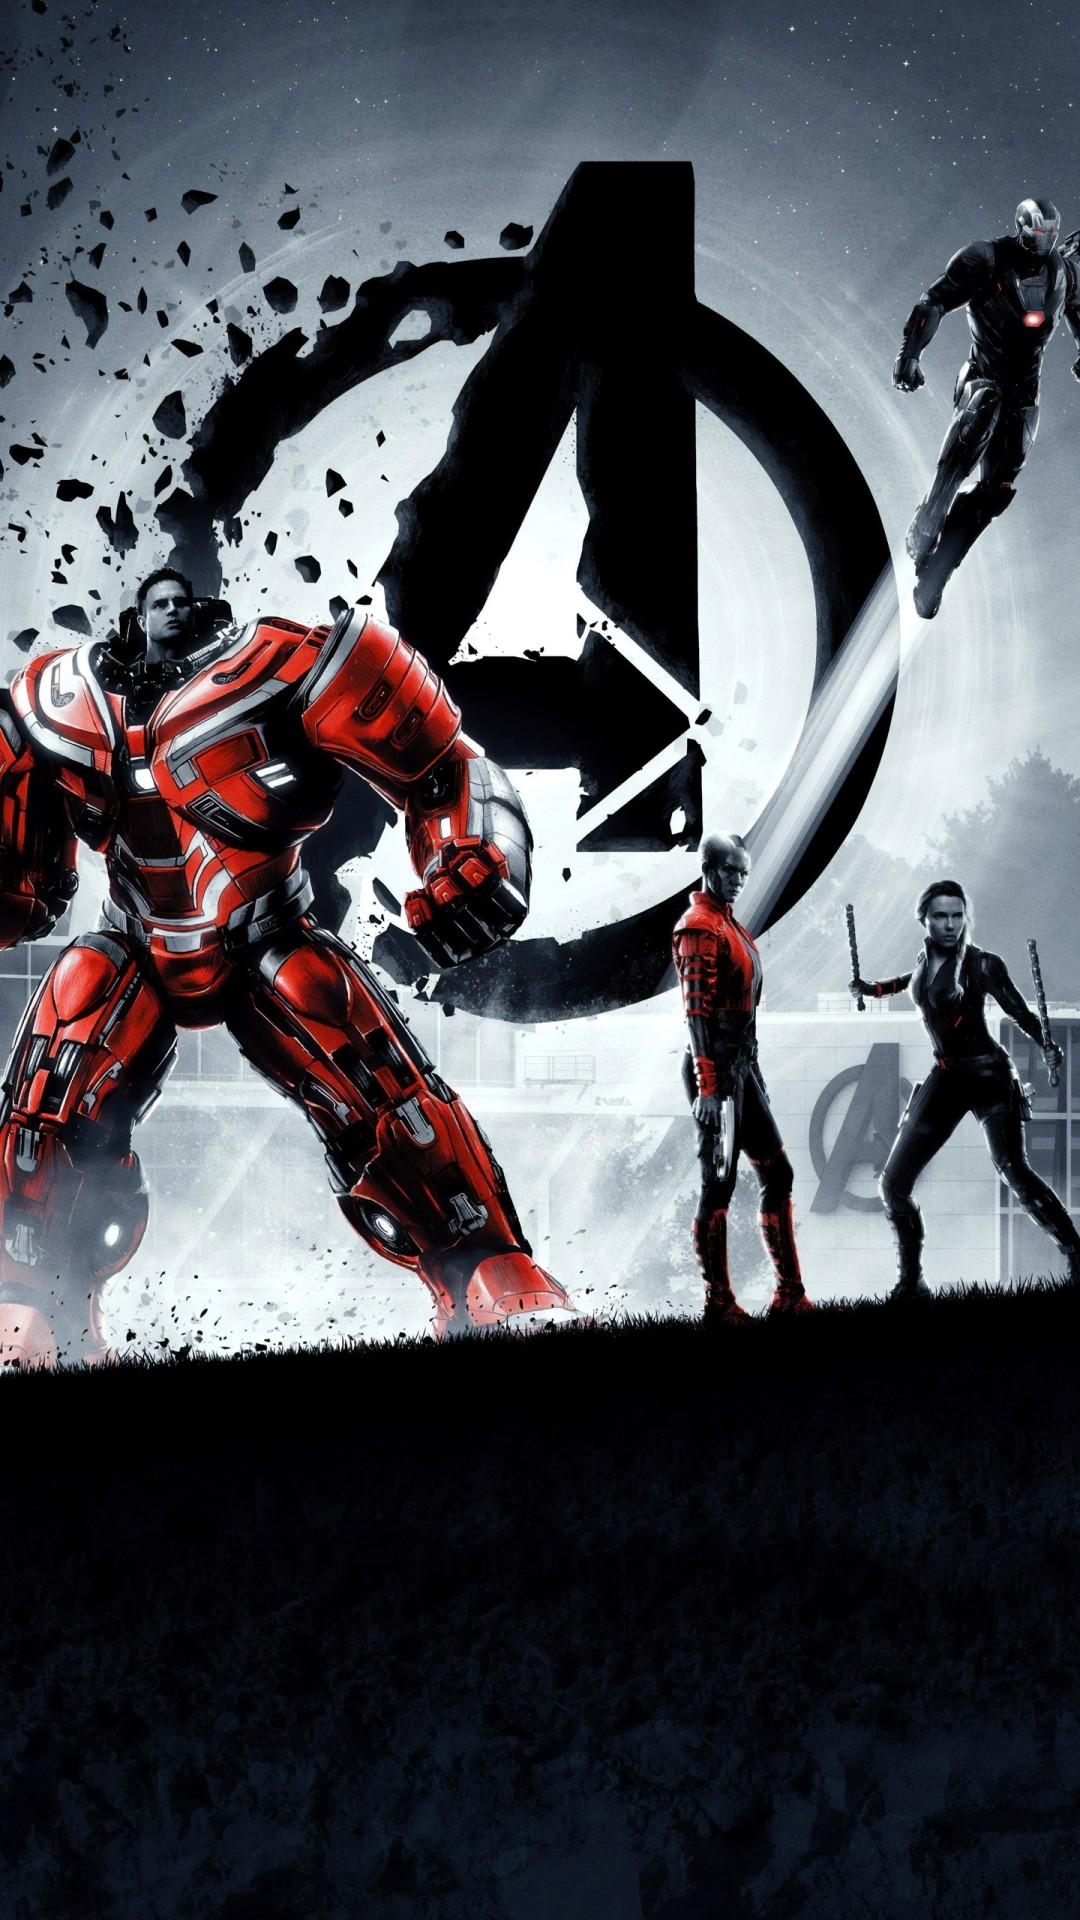 Iron Man Avengers Endgame 4K 8K Wallpaper. HD Wallpaper